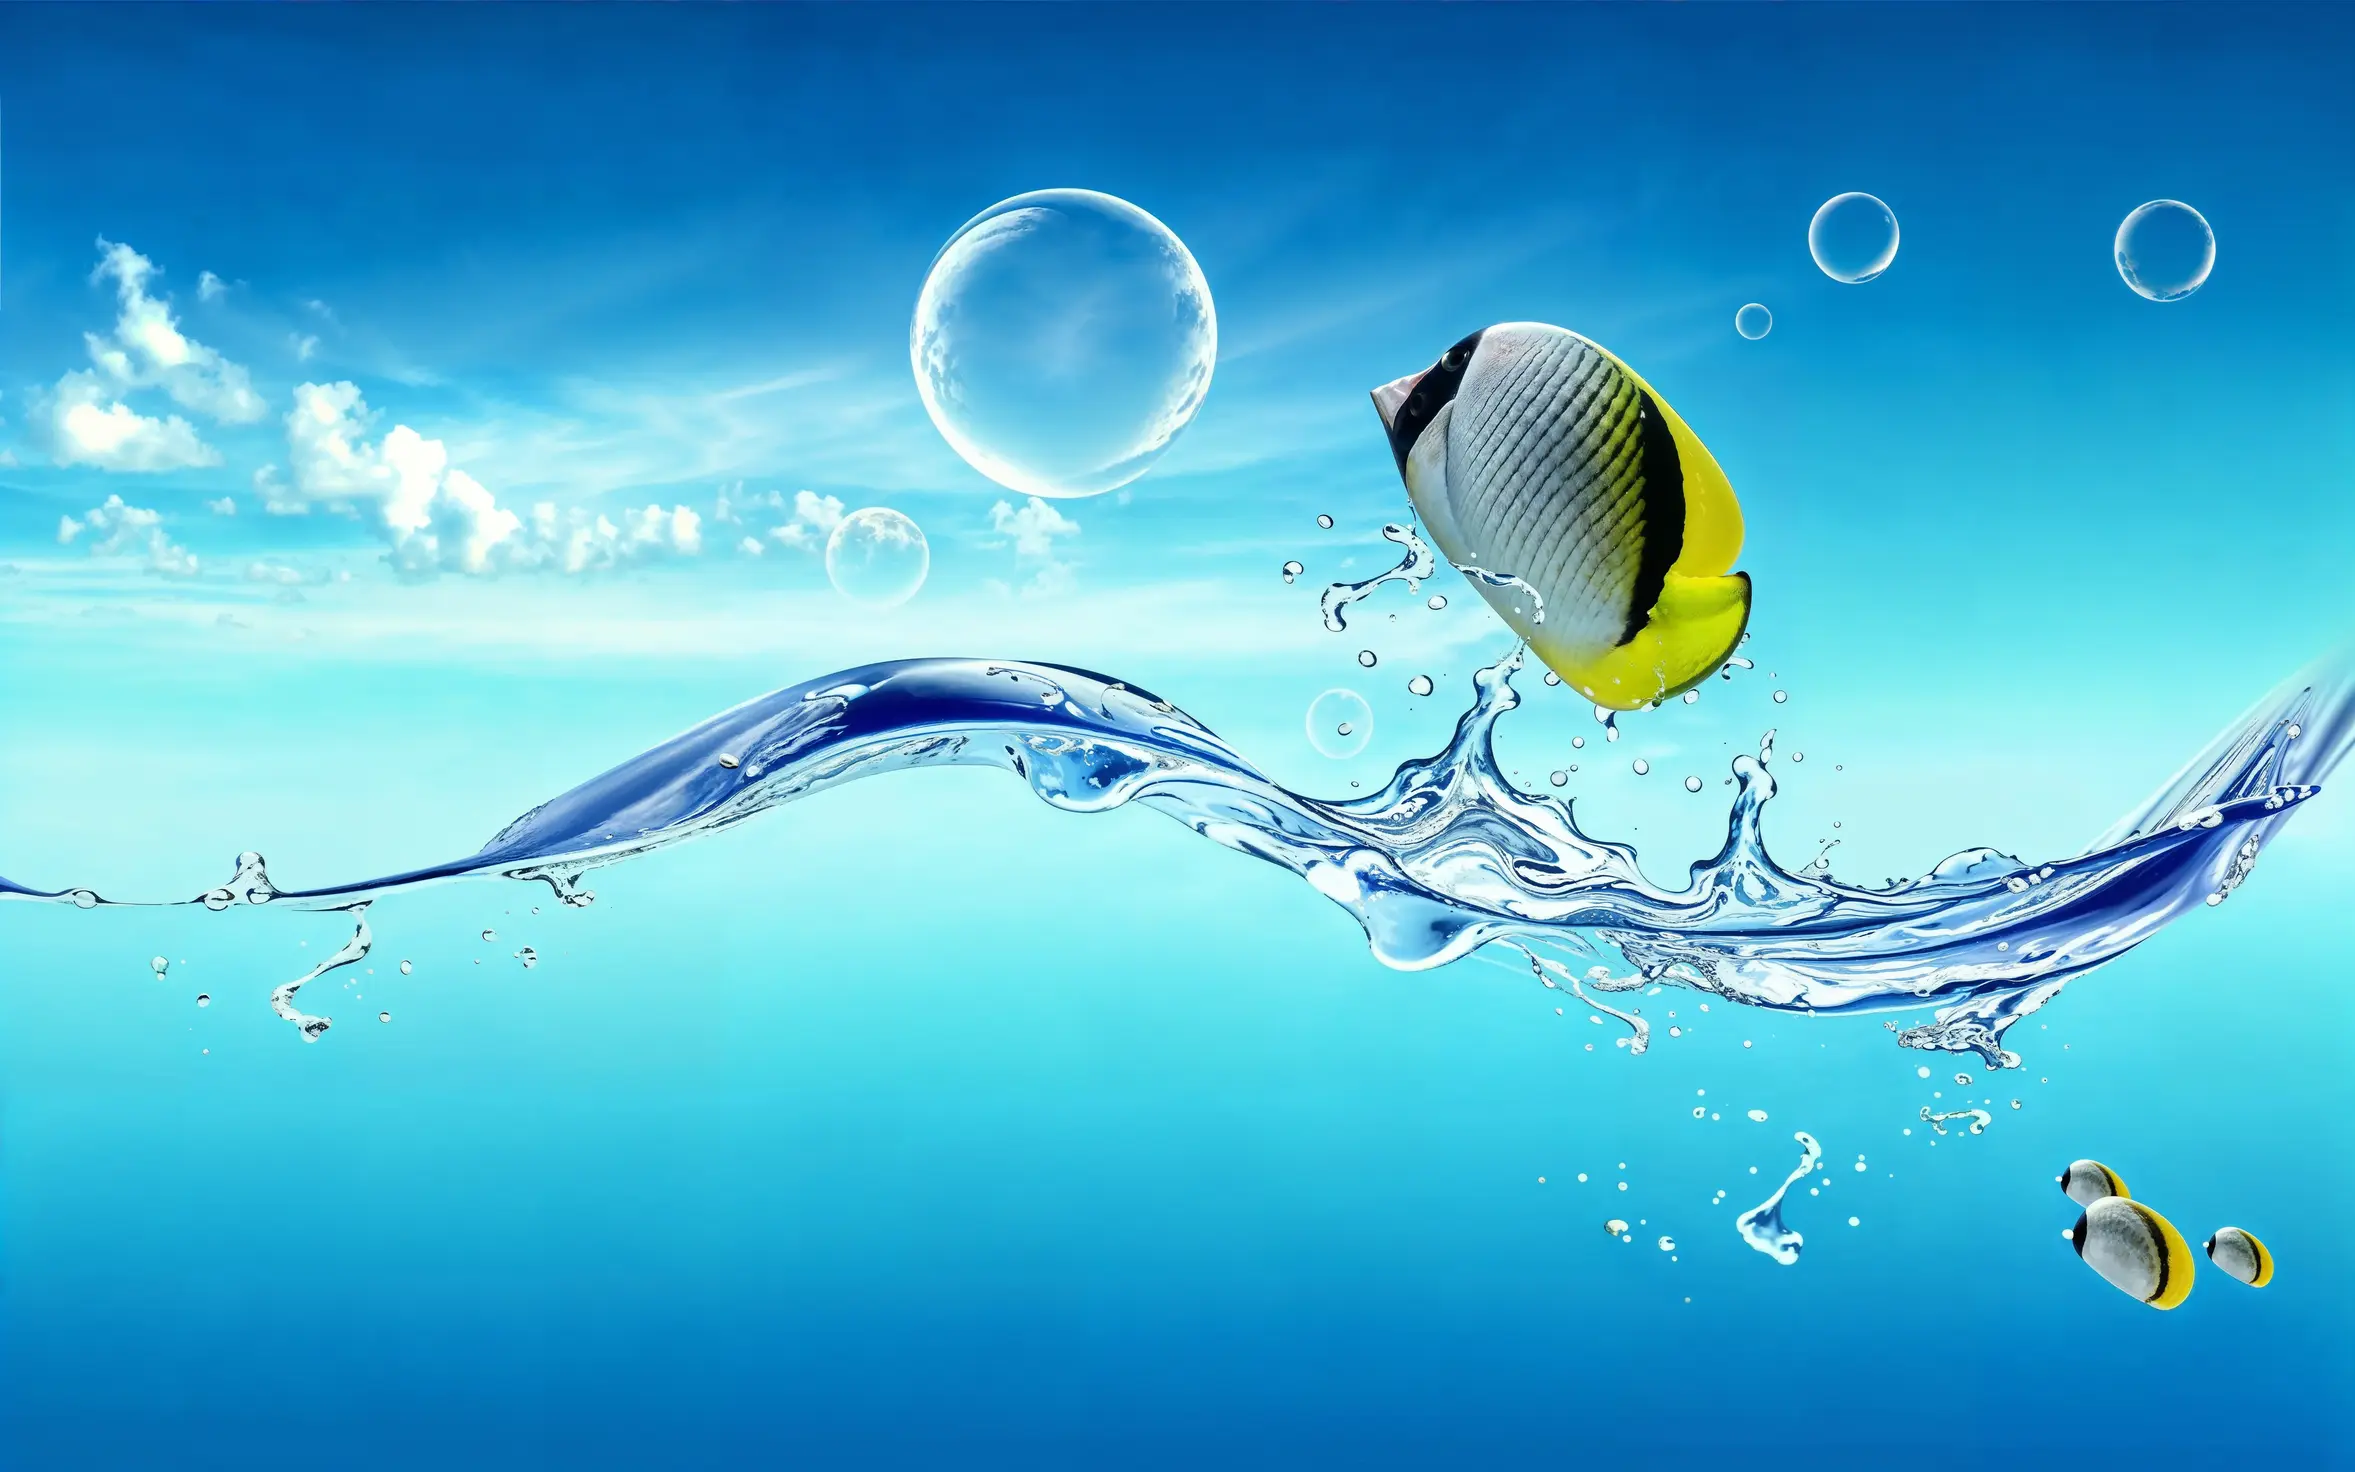 Beispiel für Helvetica Aqua Aero-Design mit einer kinderfreundlichen Wasserumgebung, lebendigen Farben und glänzenden Elementen